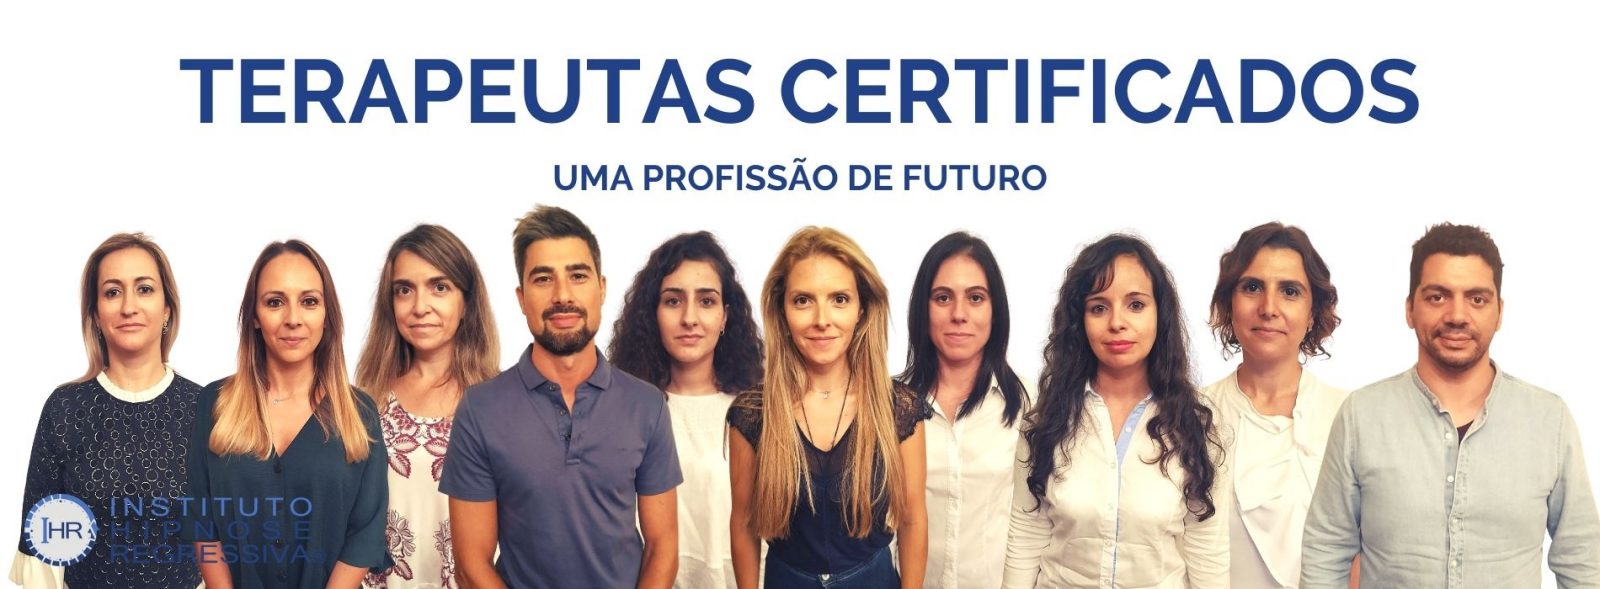 Terapeutas Certificados em Hipnose Regressiva e Certificados IHR pelo Instituto de Hipnose Regressiva pelo Hipnoterapeuta António Andrade em Santa Maria da Feira Portugal